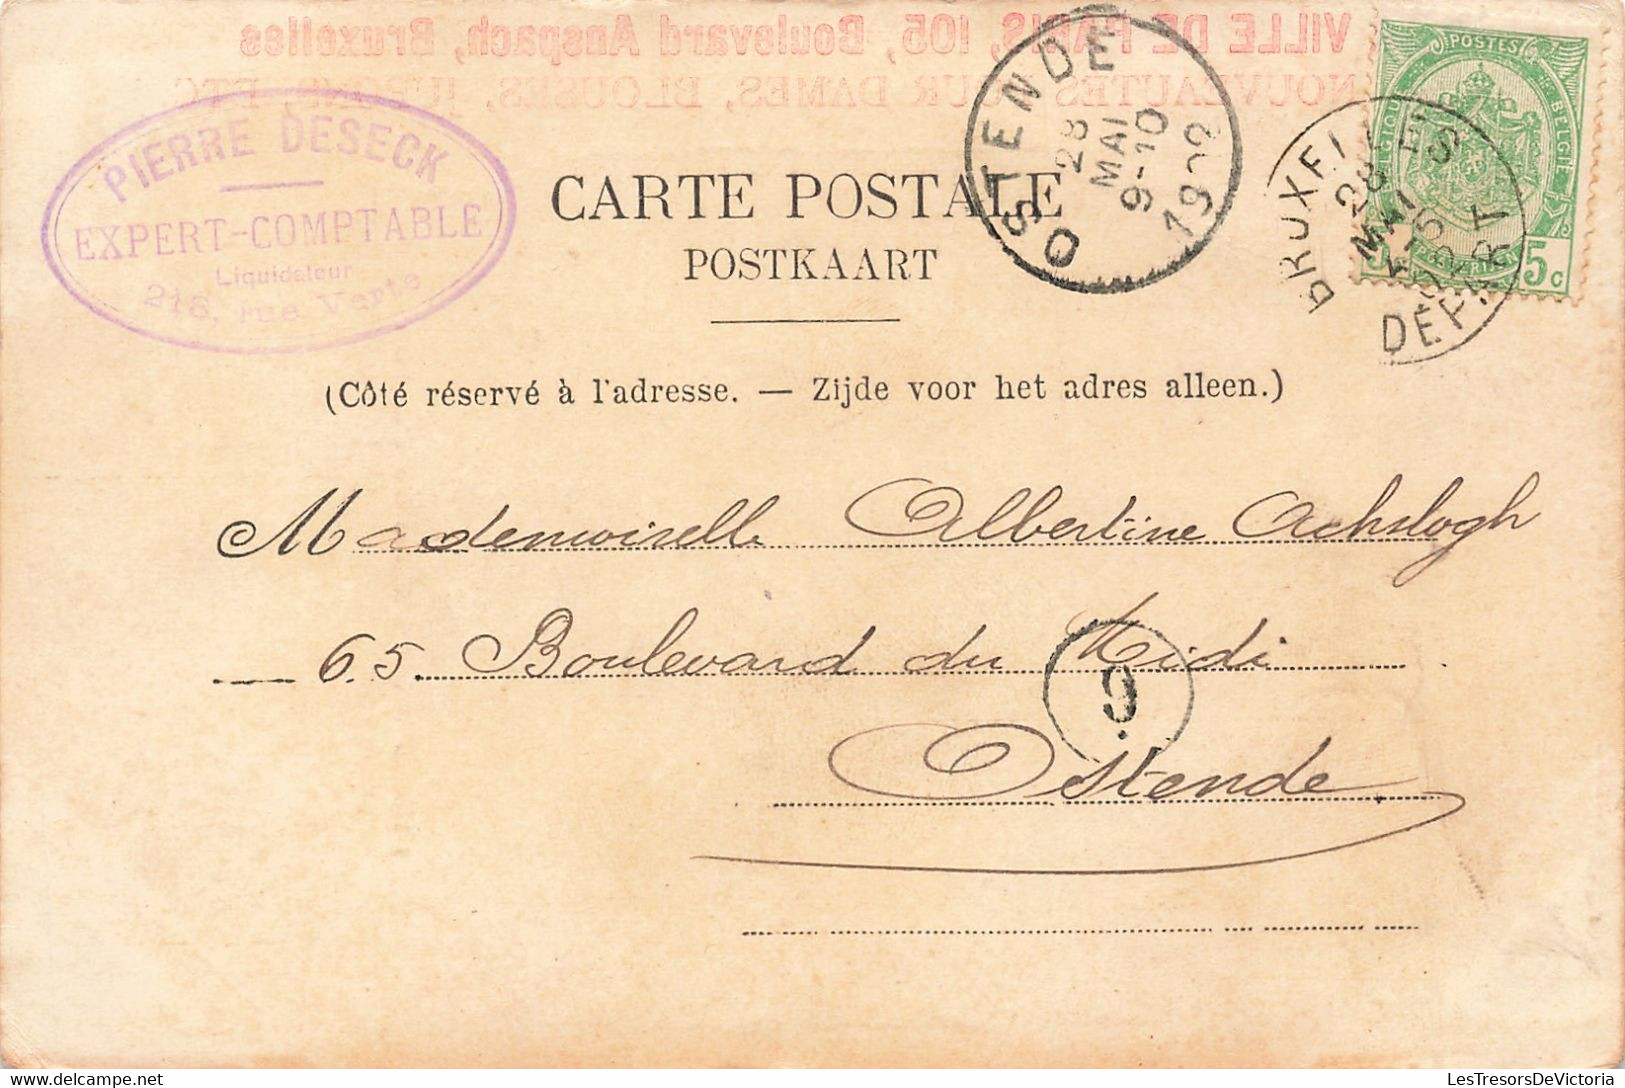 Publicité - Liège - Montagne De Bueren - A La Ville De Paris - Pierre Deseck - Précurseur - Carte Postale Ancienne - Werbepostkarten